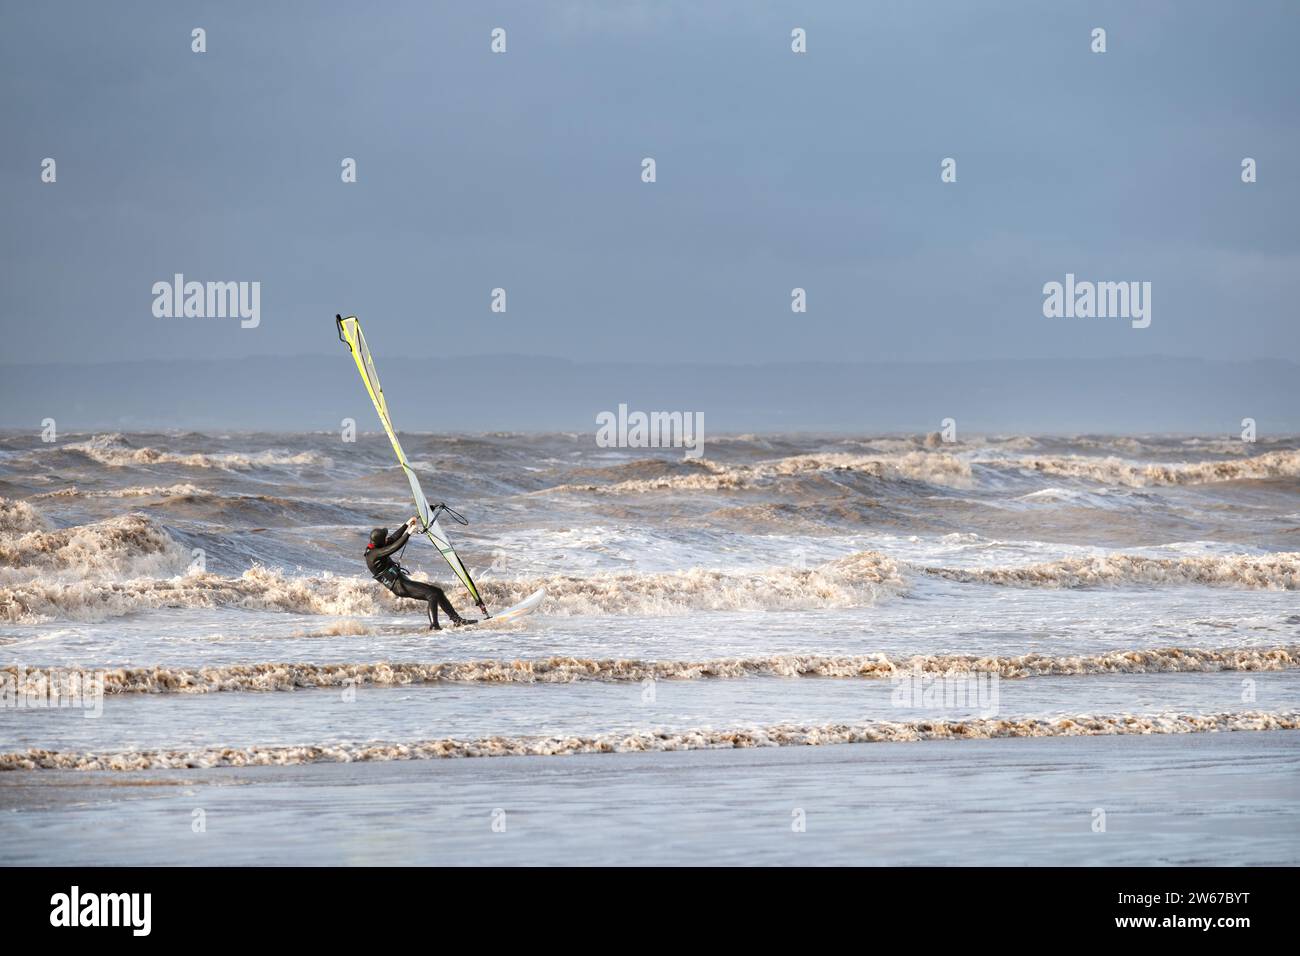 UK Weston super jument : un surfeur de vent combat des vents forts et de grandes vagues alors qu'il voyage à grande vitesse le long de l'eau près de la rive Banque D'Images